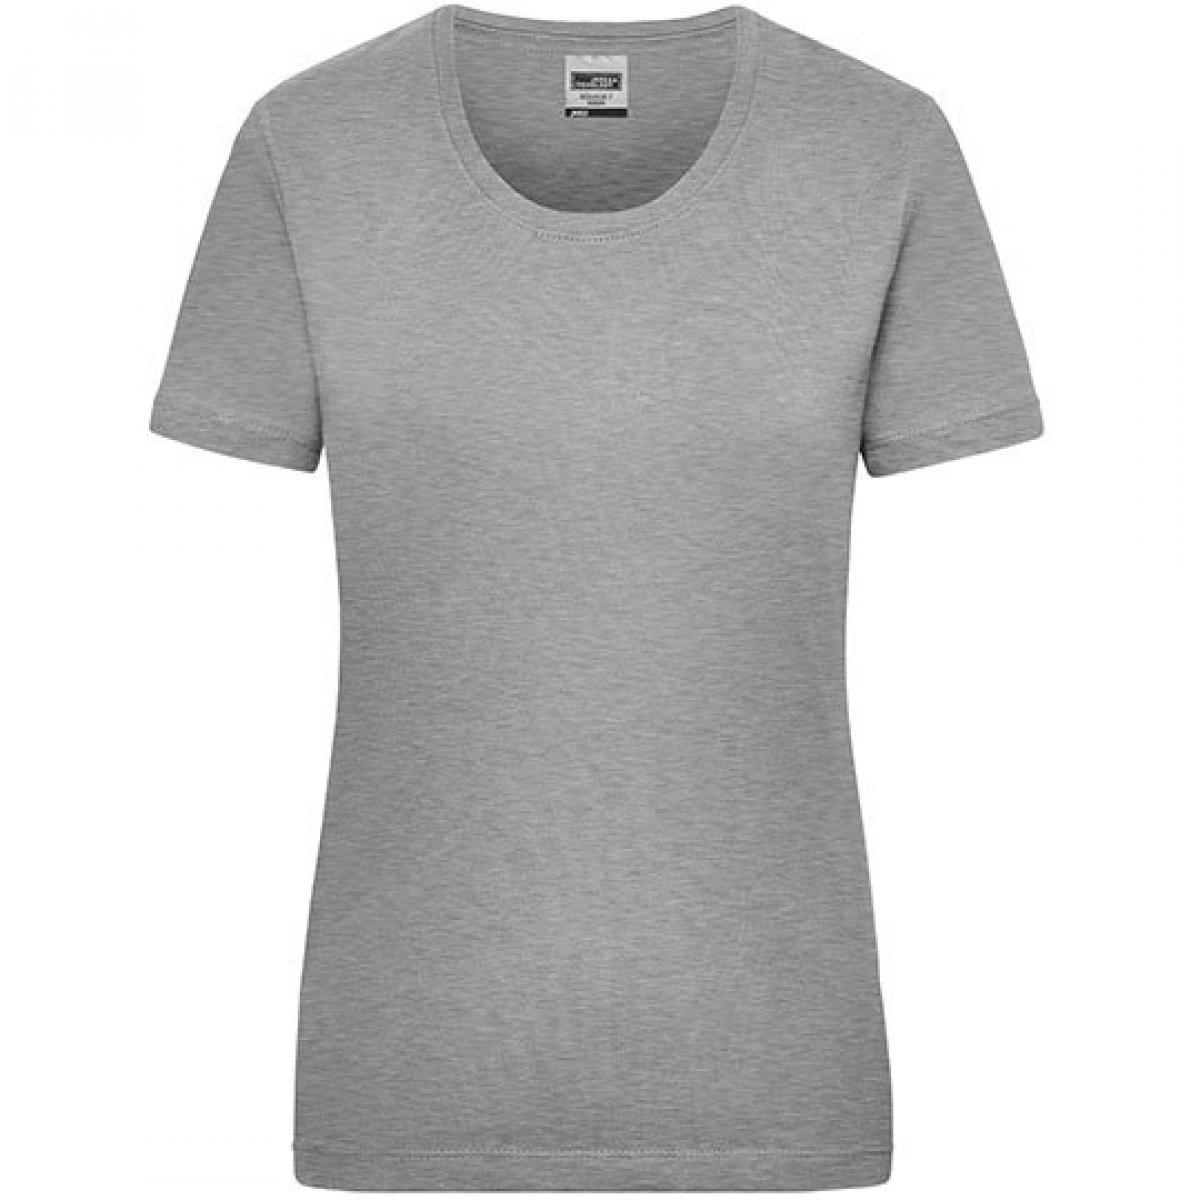 Hersteller: James+Nicholson Herstellernummer: JN 802 Artikelbezeichnung: Workwear-T Women Damen T-Shirt Farbe: Grey Heather